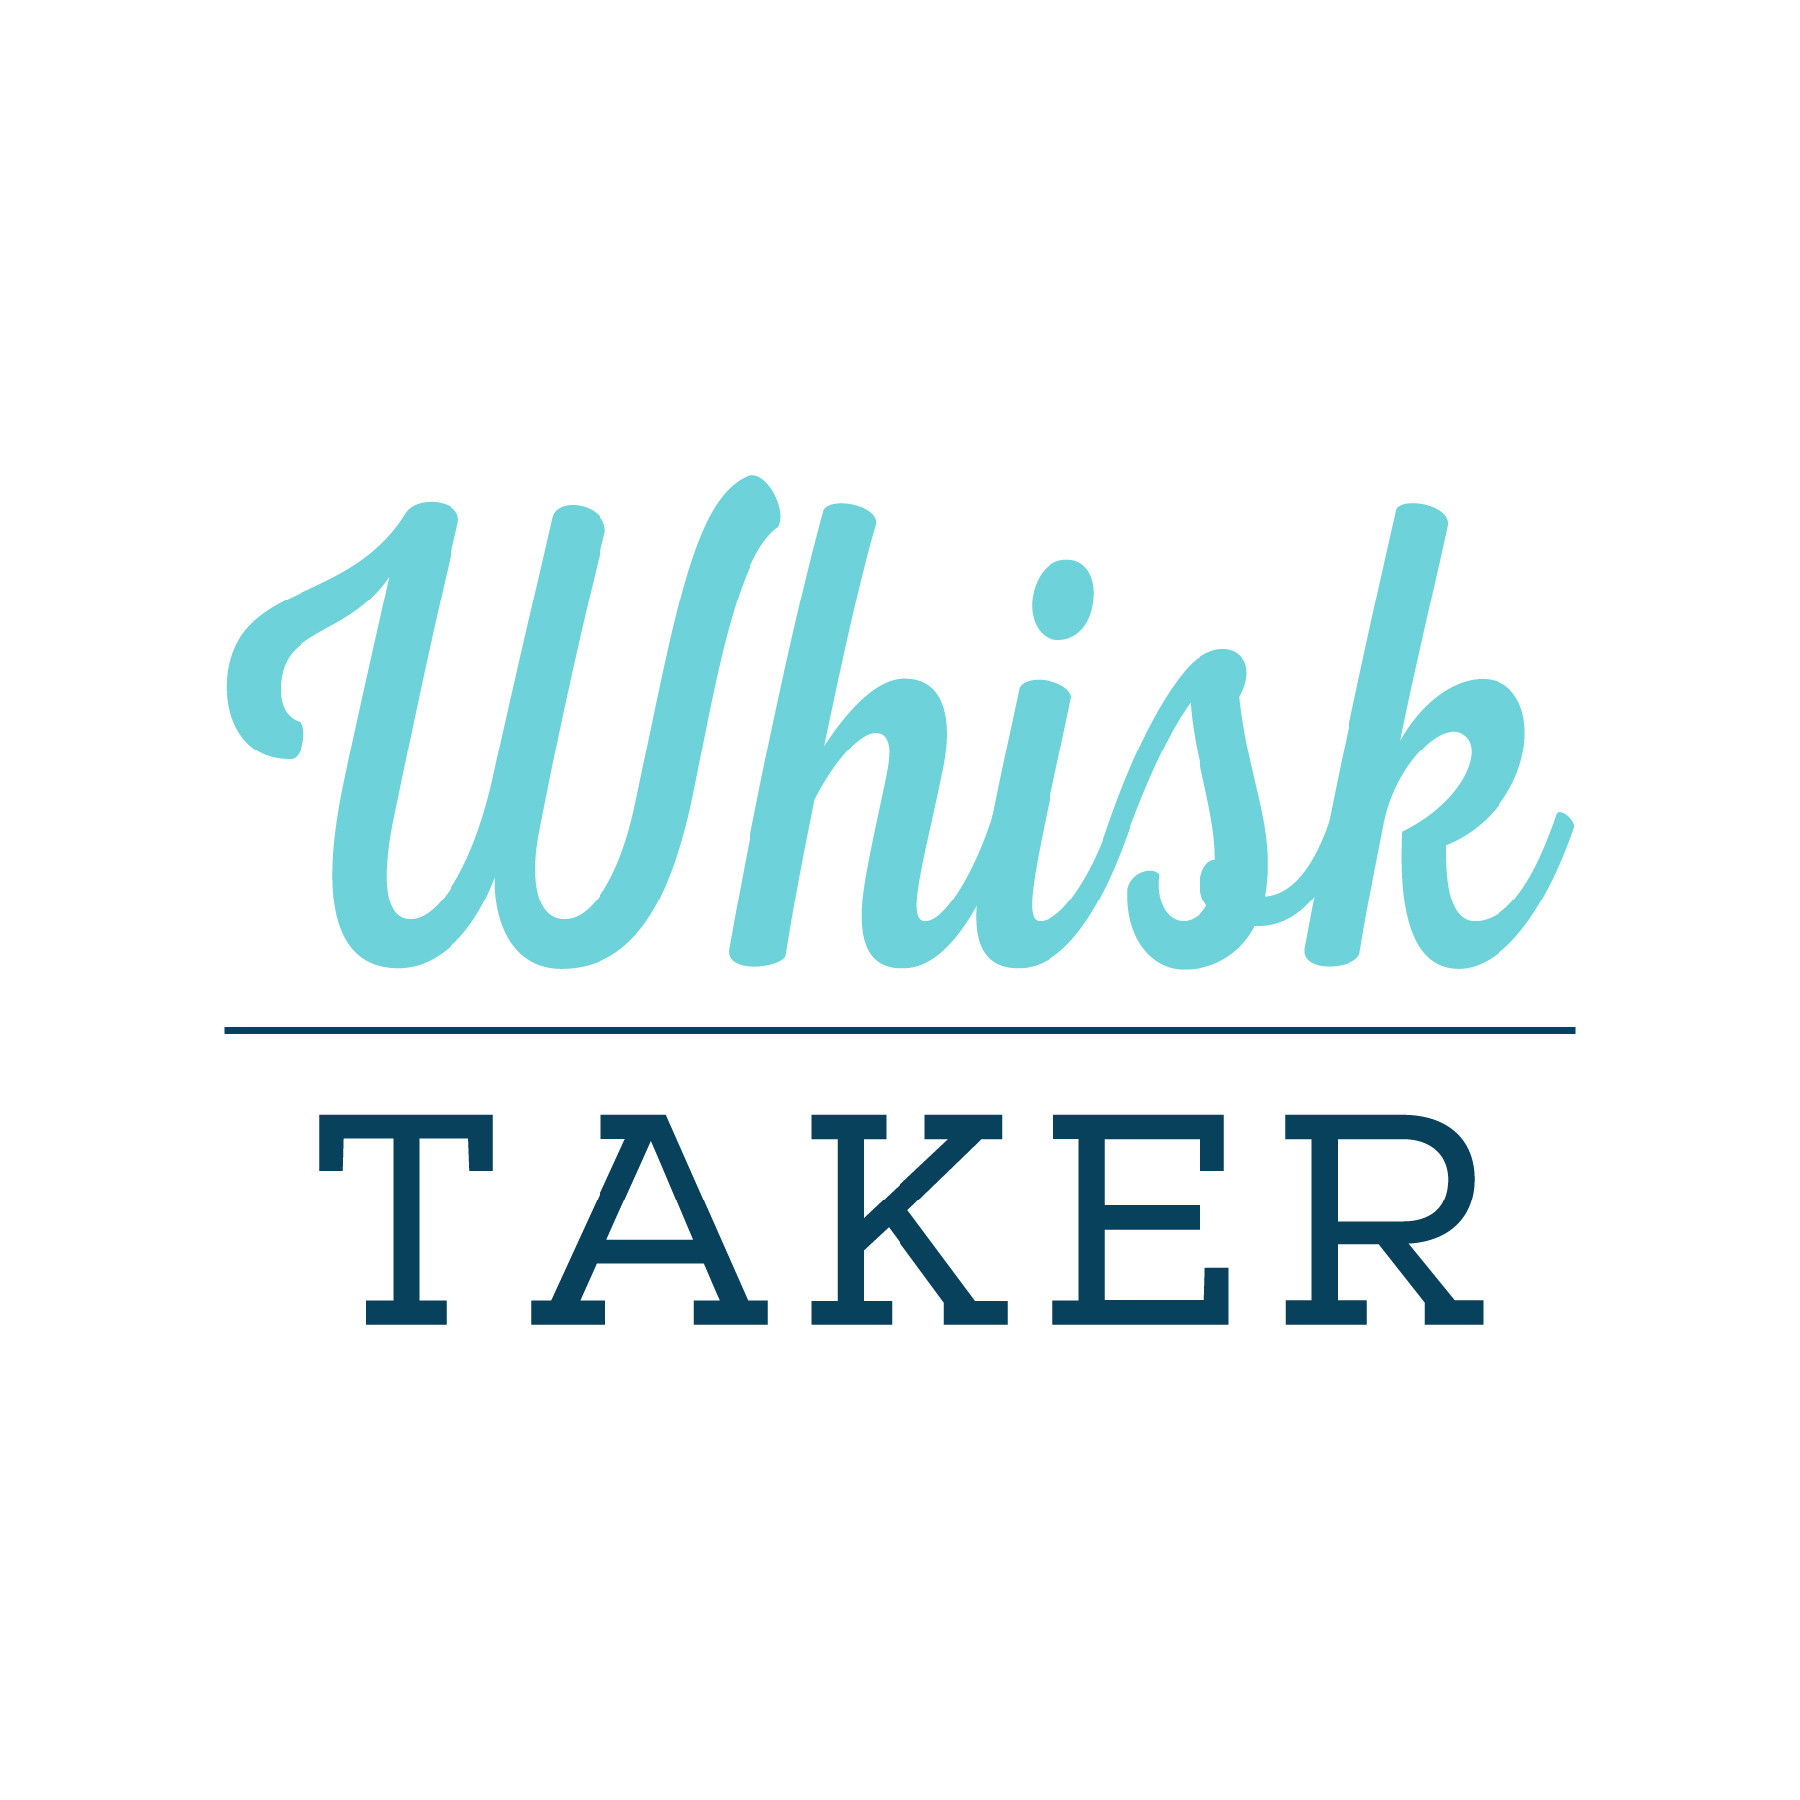 Whisk Taker